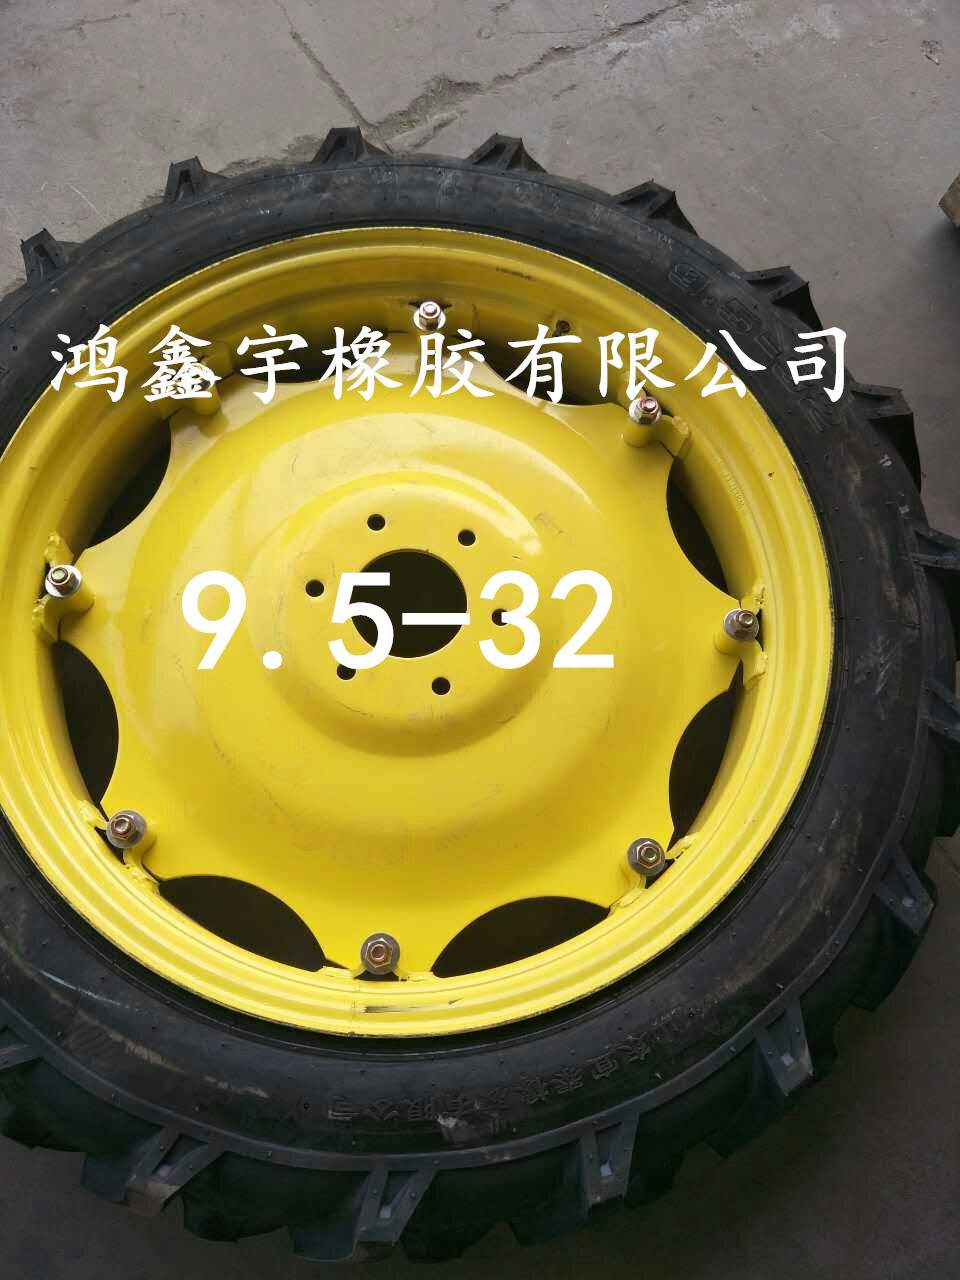 厂家批发 9.5-32收获机轮胎打药机轮胎图片